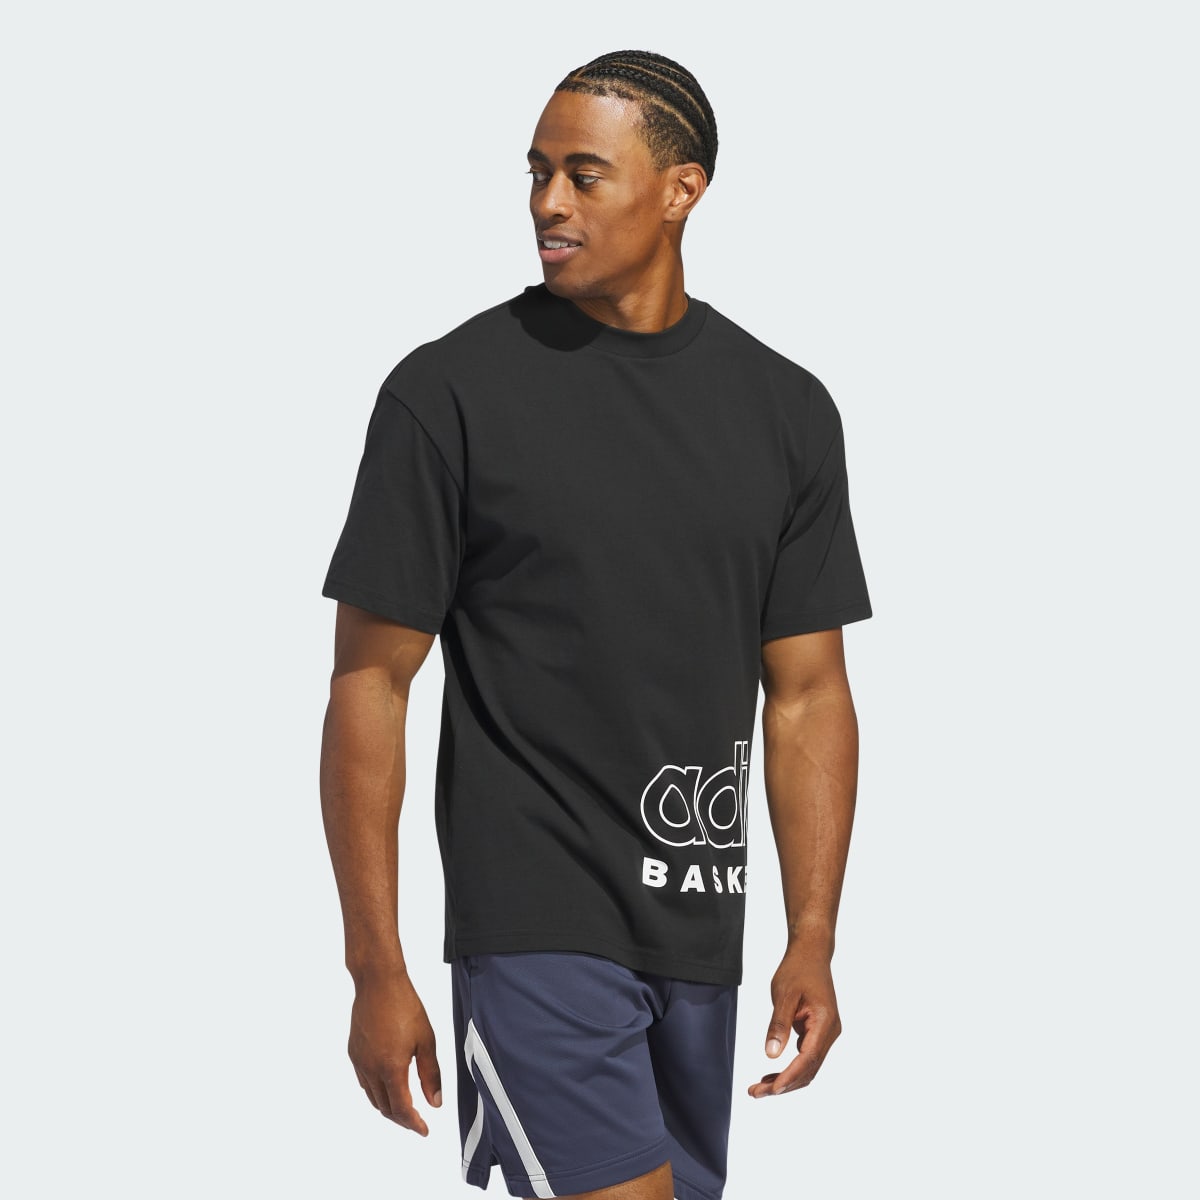 Adidas T-shirt Select adidas Basketball. 4